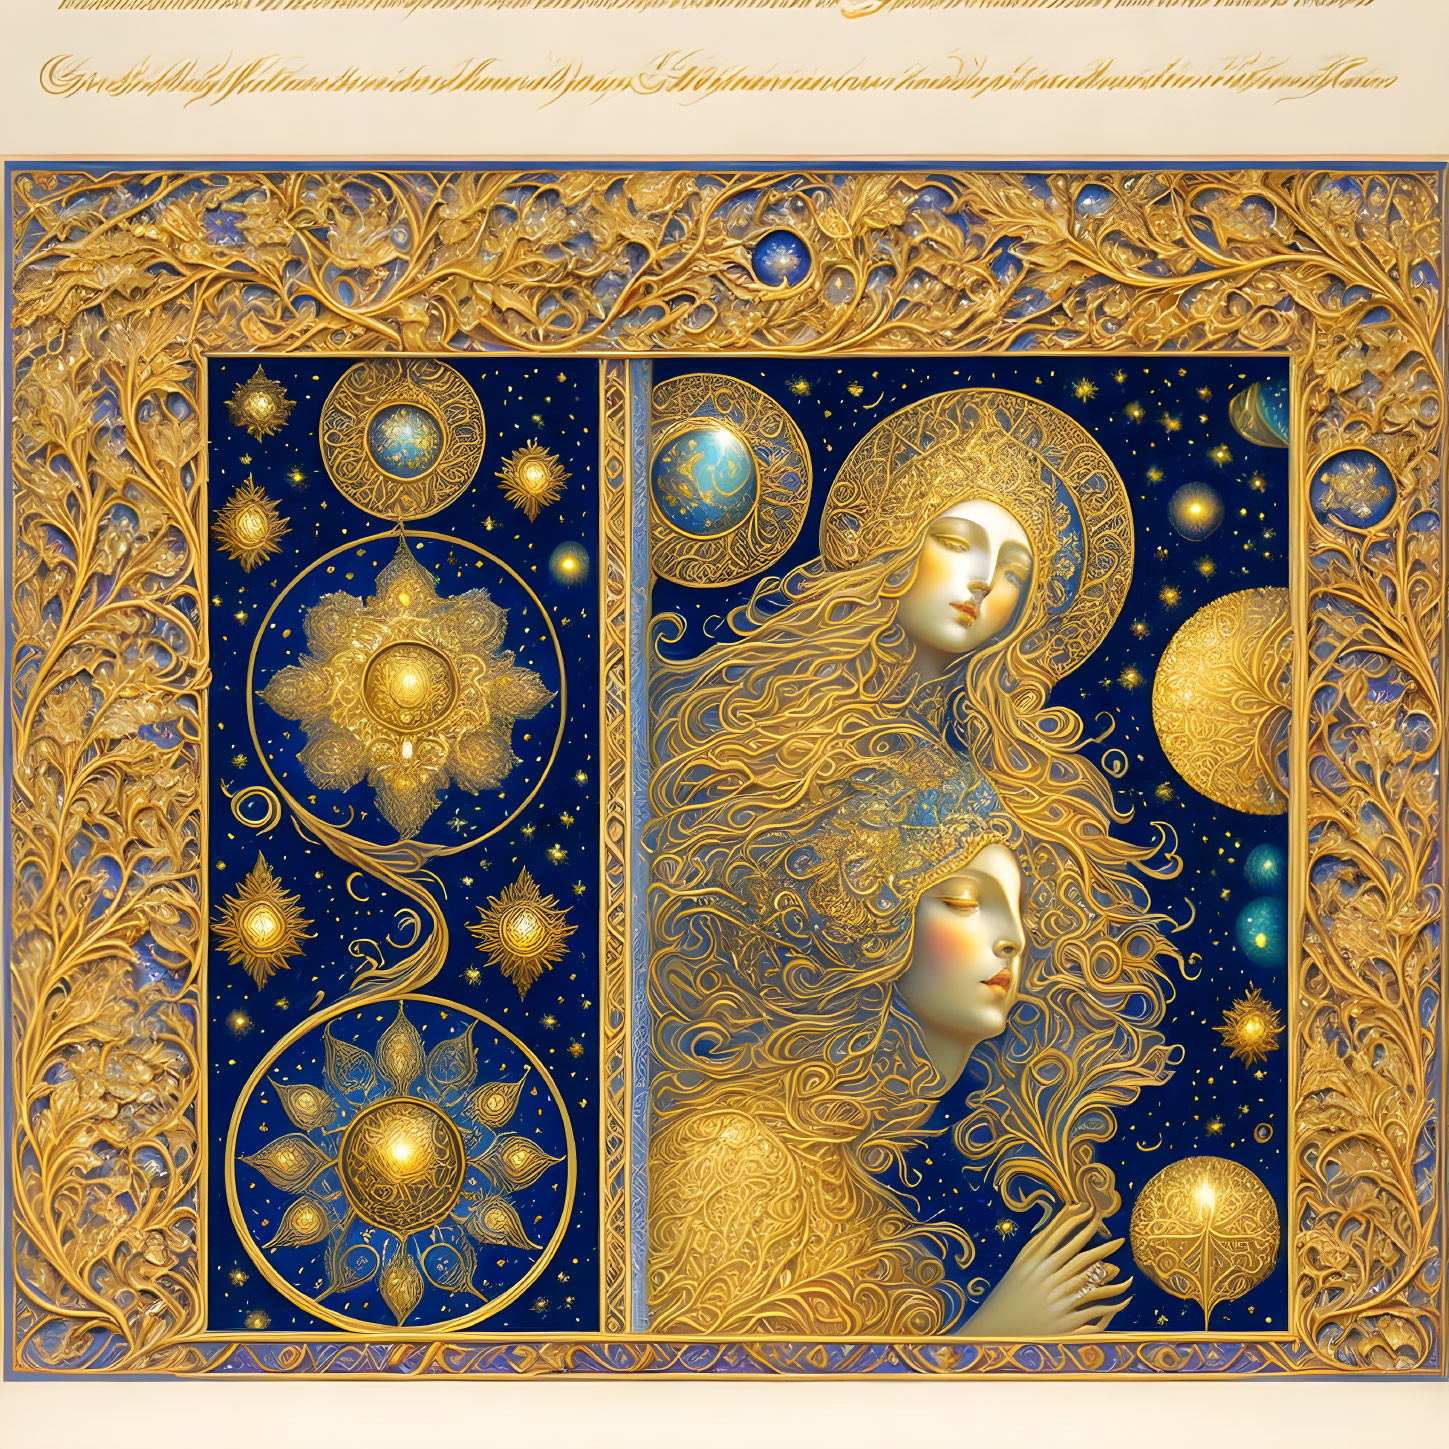 Golden Celestial Theme Woman Face Book Cover Design